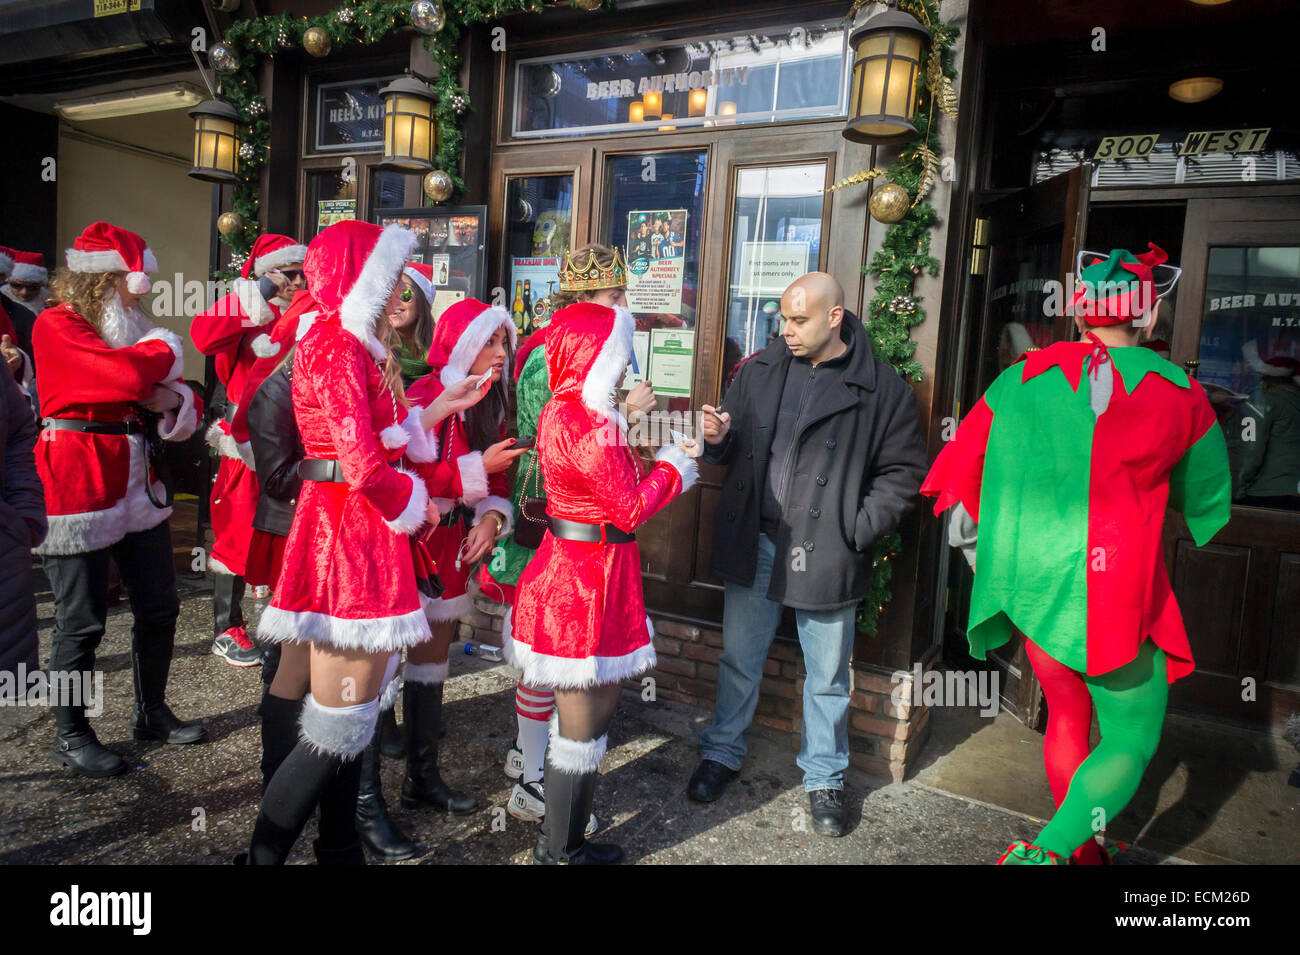 Un portier à l'extérieur de l'autorité de la bière dans un bar à New York Midtown vérifie l'identité et l'âge des clients au cours de l'Assemblée SantaCon le Samedi, Décembre 13, 2014. SantaCon, principalement un pub crawl à Santa et d'autres connexes Noël costumes, attire des milliers de masqueraders allant de bar en bar. Cette année en raison de repousser à partir de différents quartiers SantaCon est plus faible et les organisateurs encouragent un comportement approprié. (© Richard B. Levine) Banque D'Images